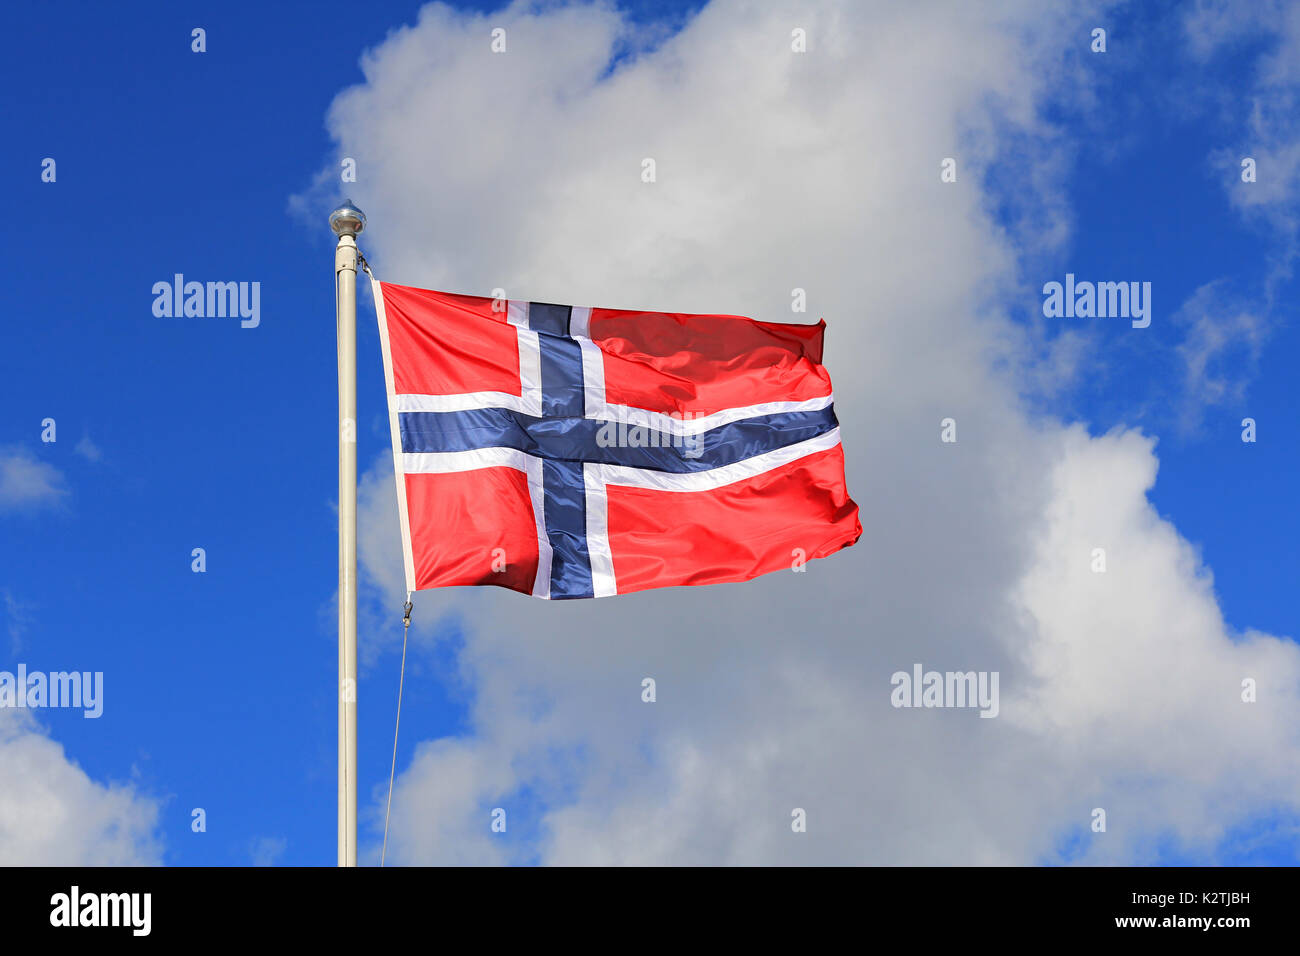 Pavillon de la Norvège contre le ciel bleu et nuages blancs. Le pavillon de la Norvège est rouge avec une croix scandinave bleu indigo, lisérée de blanc. Banque D'Images